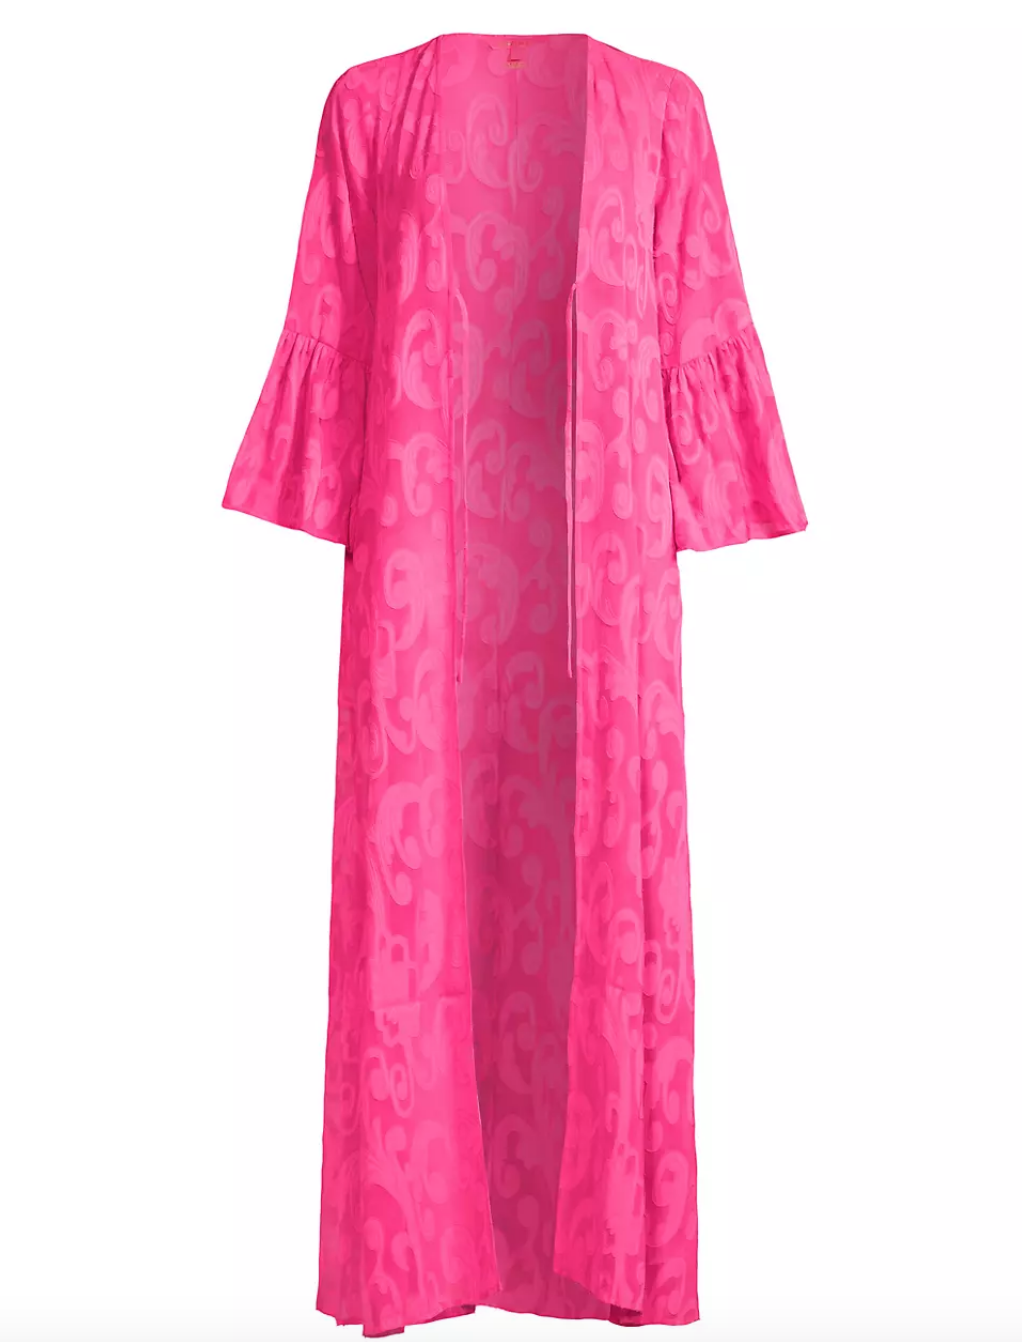 Venita Aspen's Hot Pink Cover Up